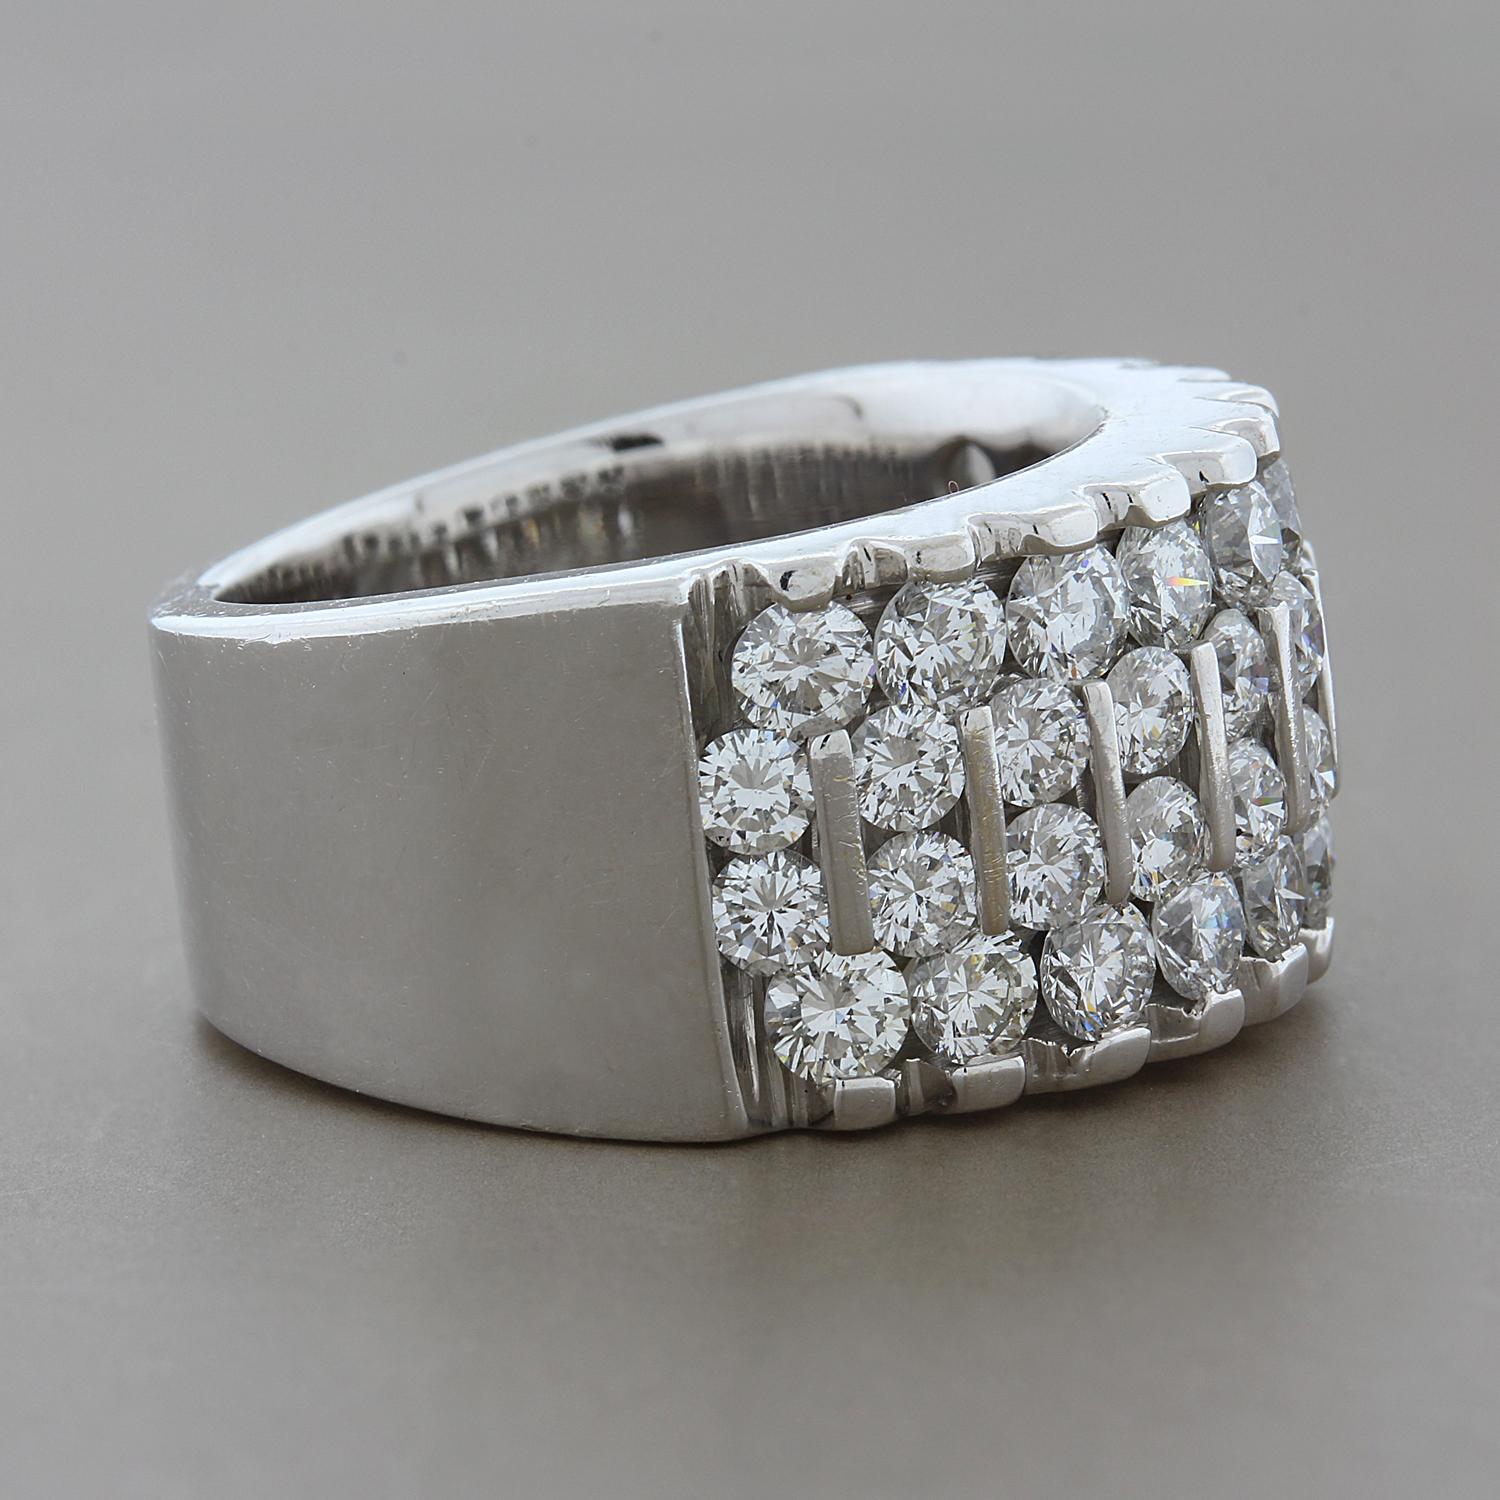 Brillant et étincelant ! Ce bracelet présente 3,48 carats de diamants ronds de qualité VS, sertis dans de l'or blanc 18 carats. Les diamants sertis en canal au centre distinguent cette bague des autres. Quatre rangs de diamants sont disposés en